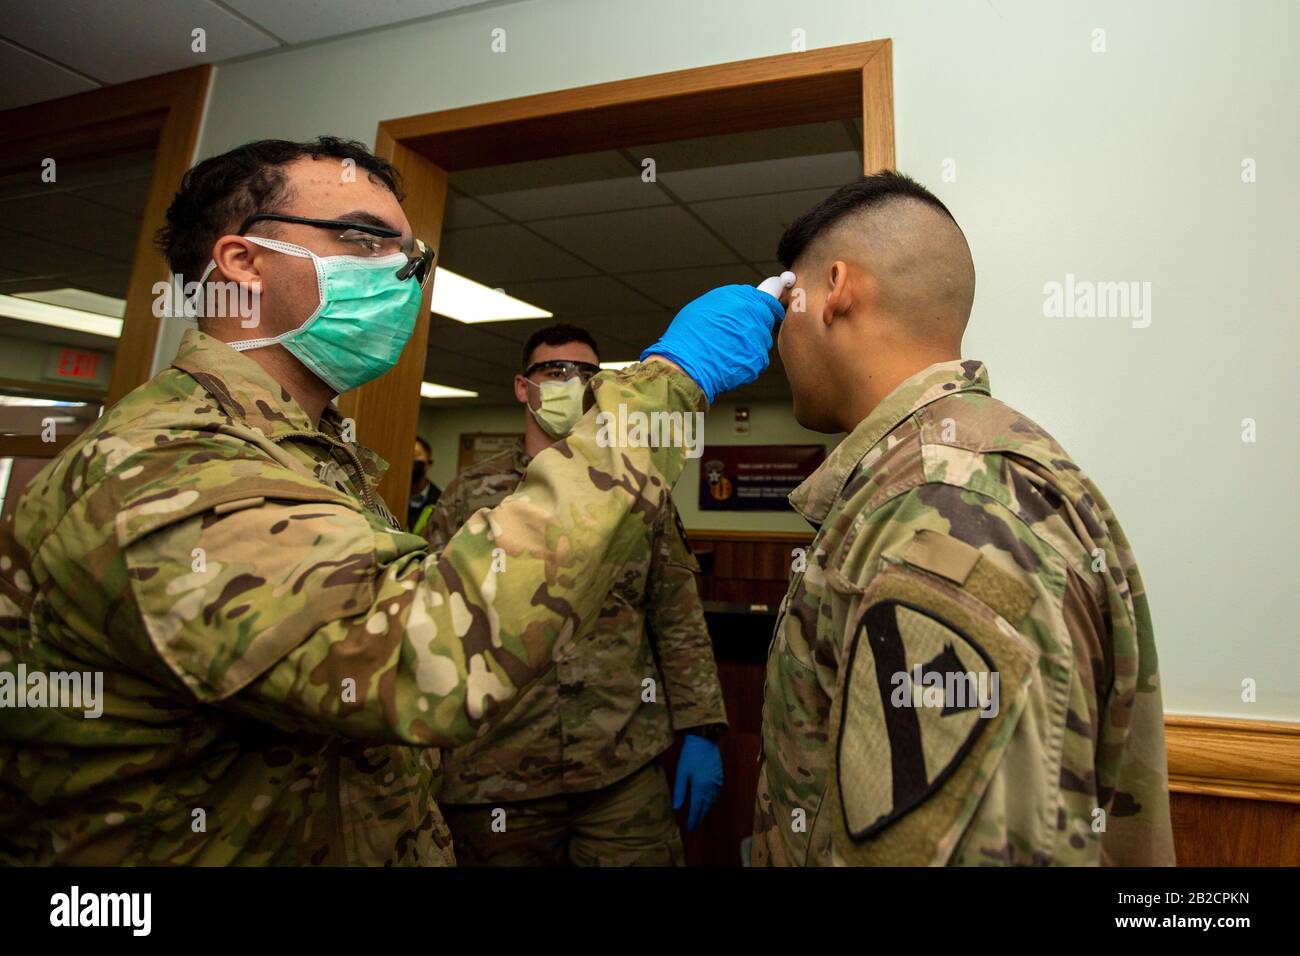 Un médico del ejército estadounidense examina a un compañero soldado para el COVID-19, usando un termómetro en la entrada de la guarnición del ejército Casey, el 26 de febrero de 2020 en Dongducheon, Corea del Sur. El brote de un nuevo coronavirus en Corea del Sur es el segundo de China. Foto de stock